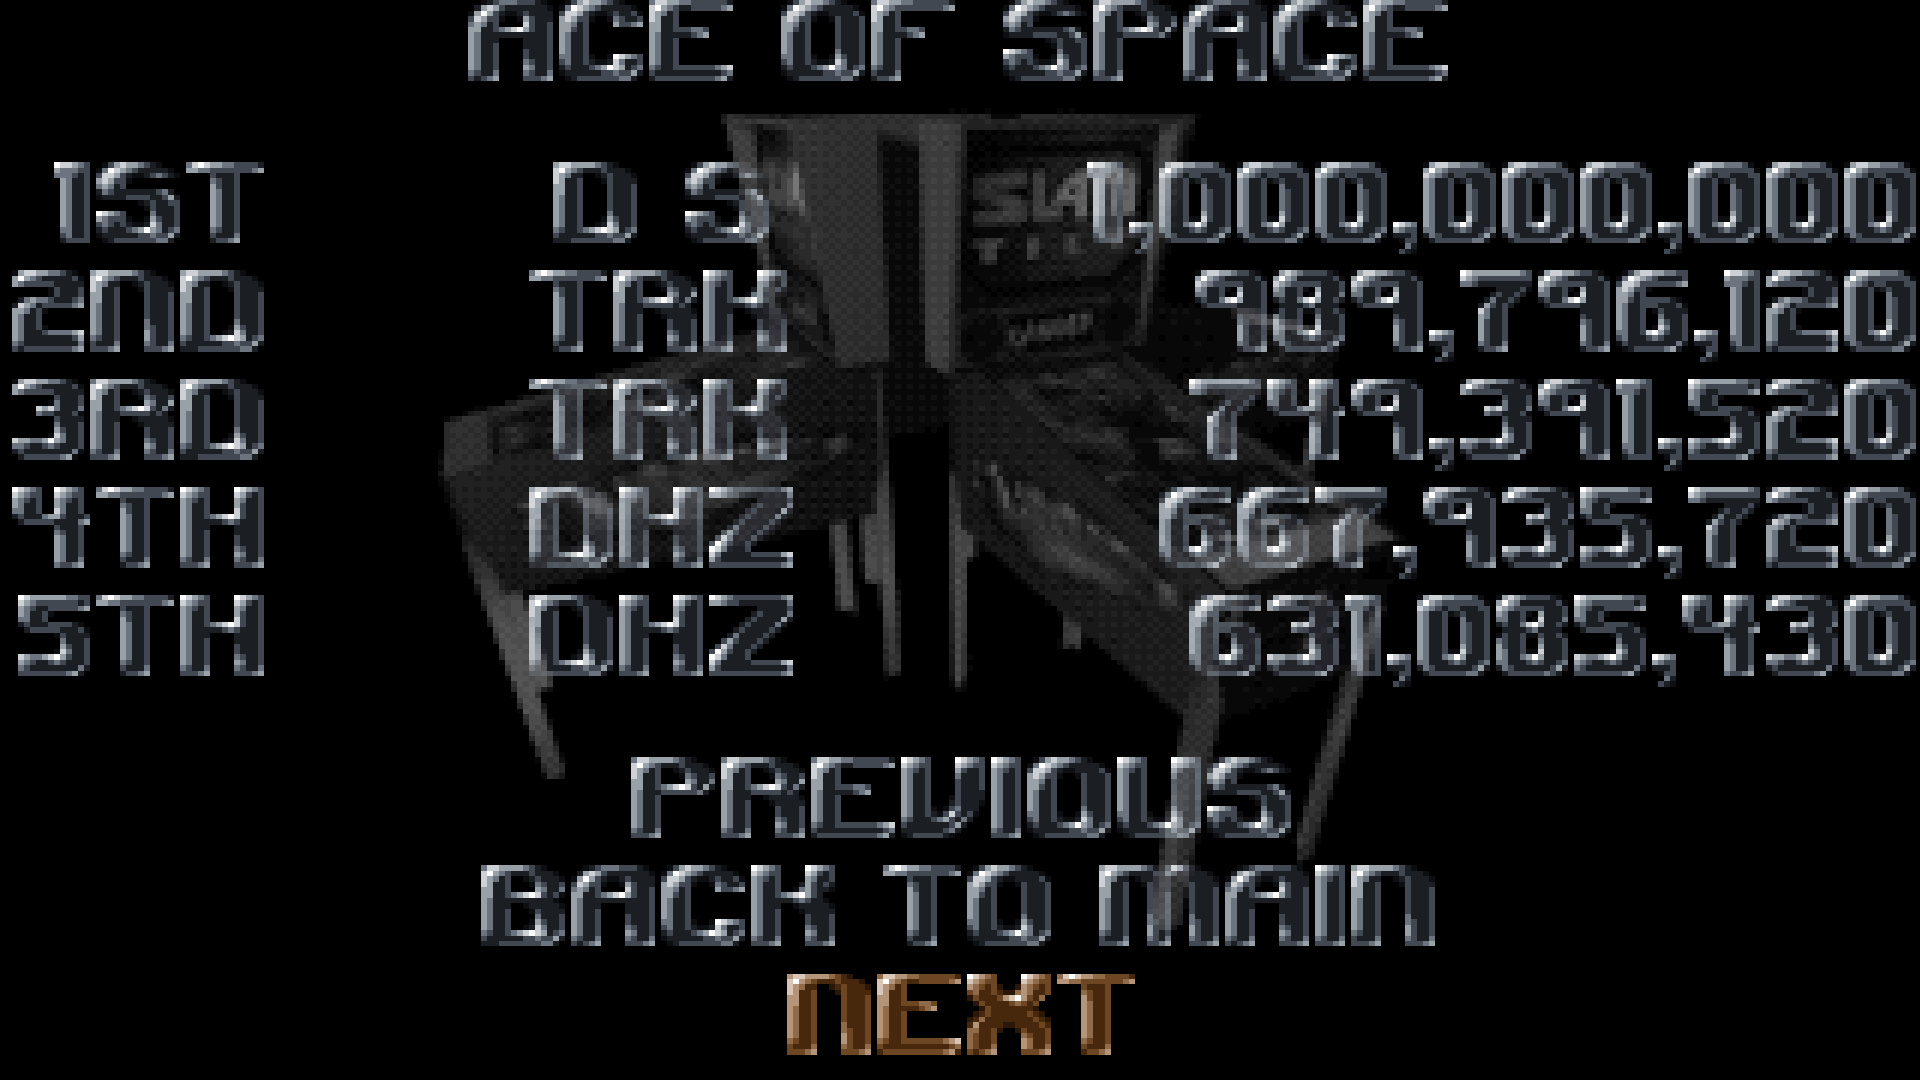 TheTrickster: Slam Tilt: Ace of Space (Amiga Emulated) 989,796,120 points on 2016-03-25 15:36:26